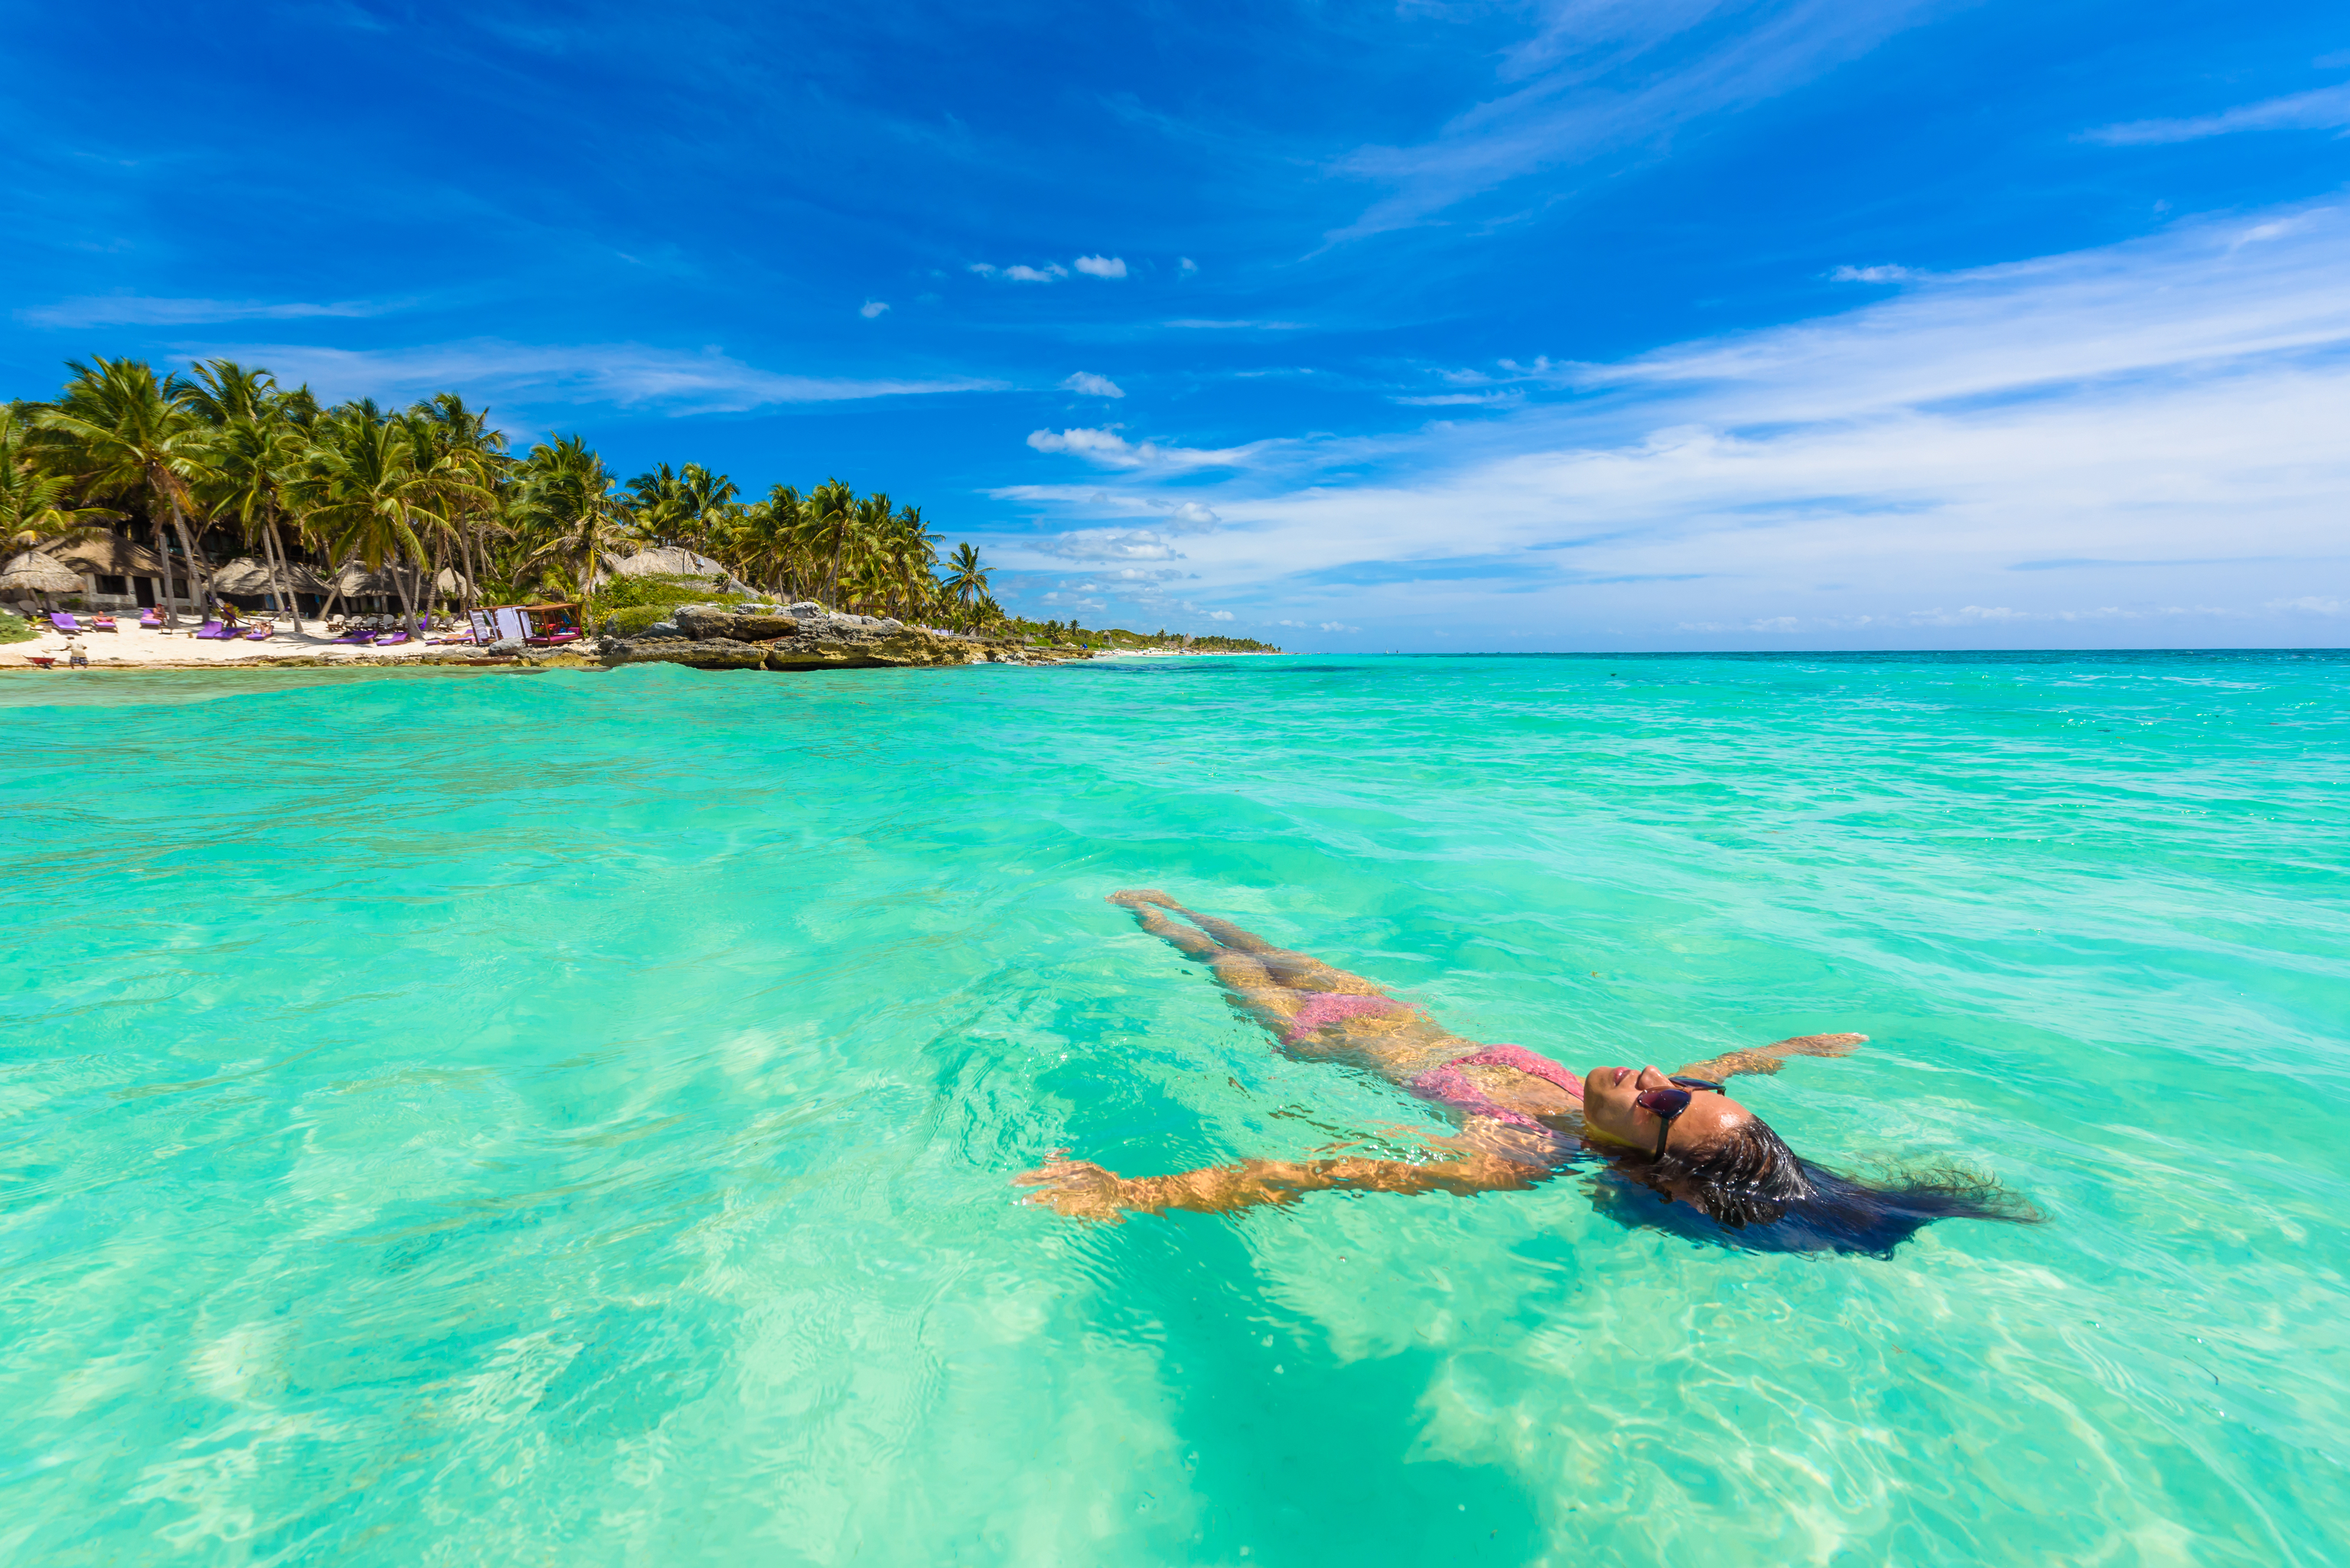 Reláx en un playa del Caribe.